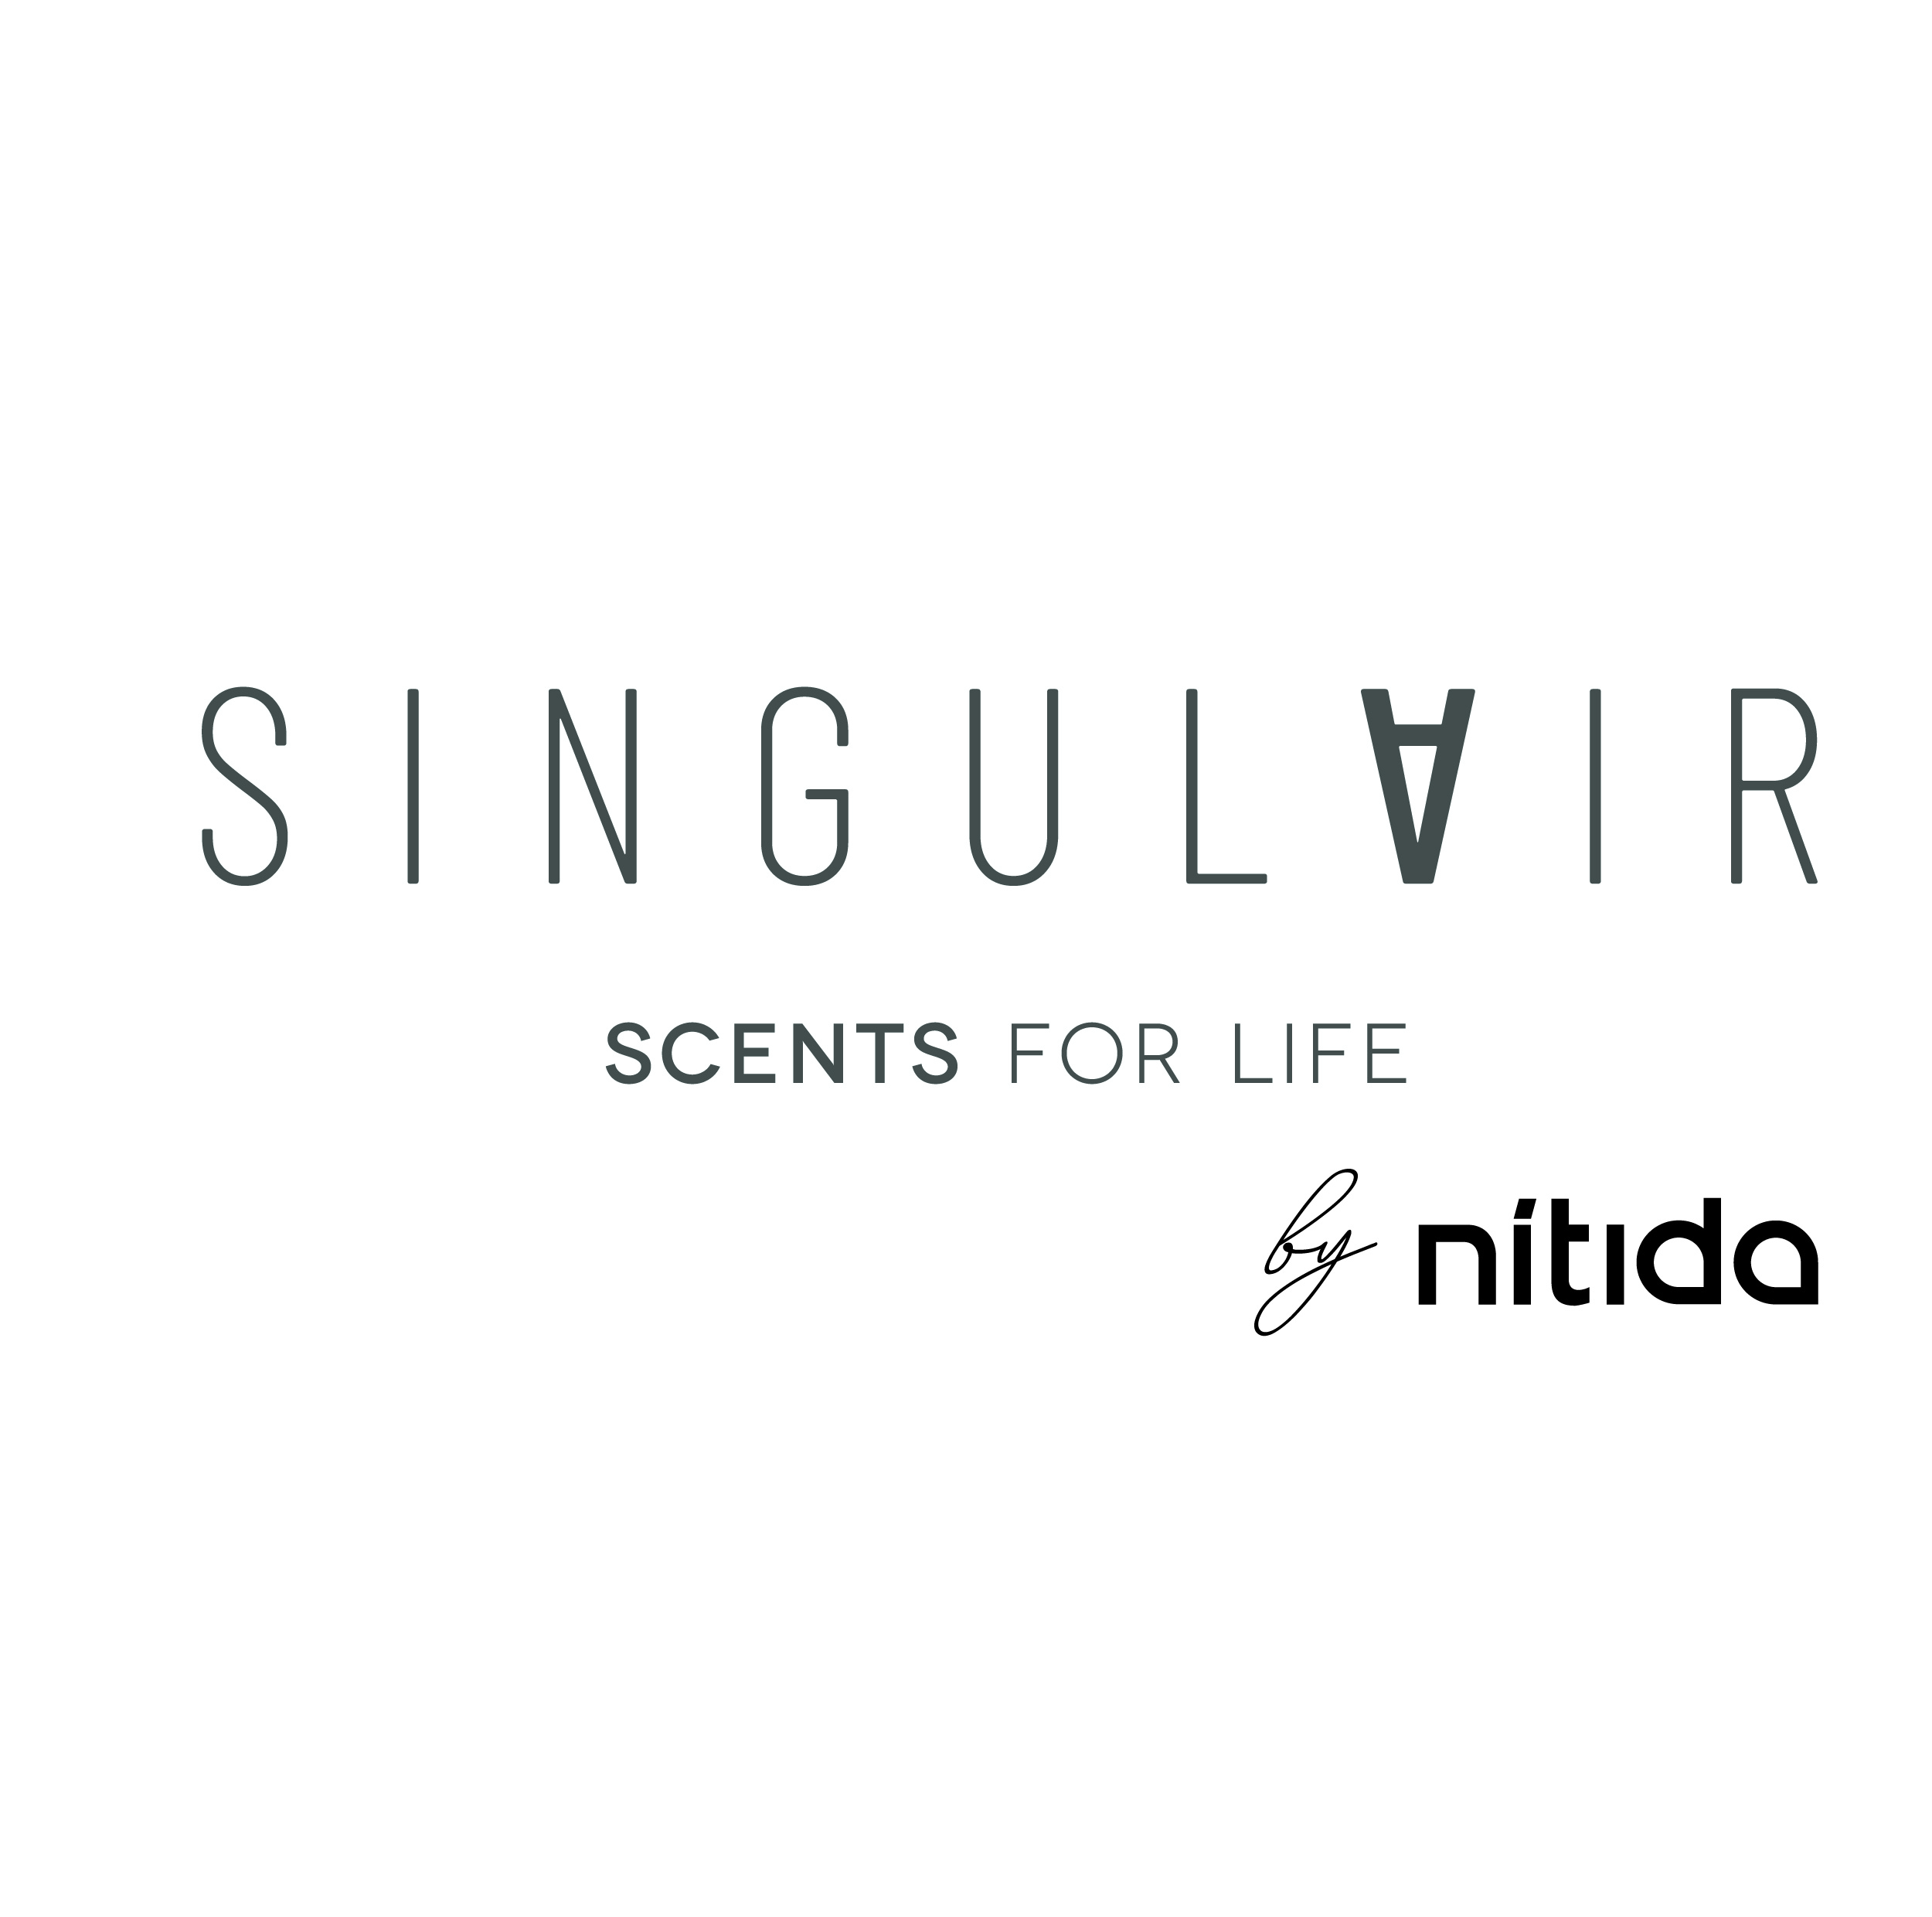 logo_singulair_bynitida-01